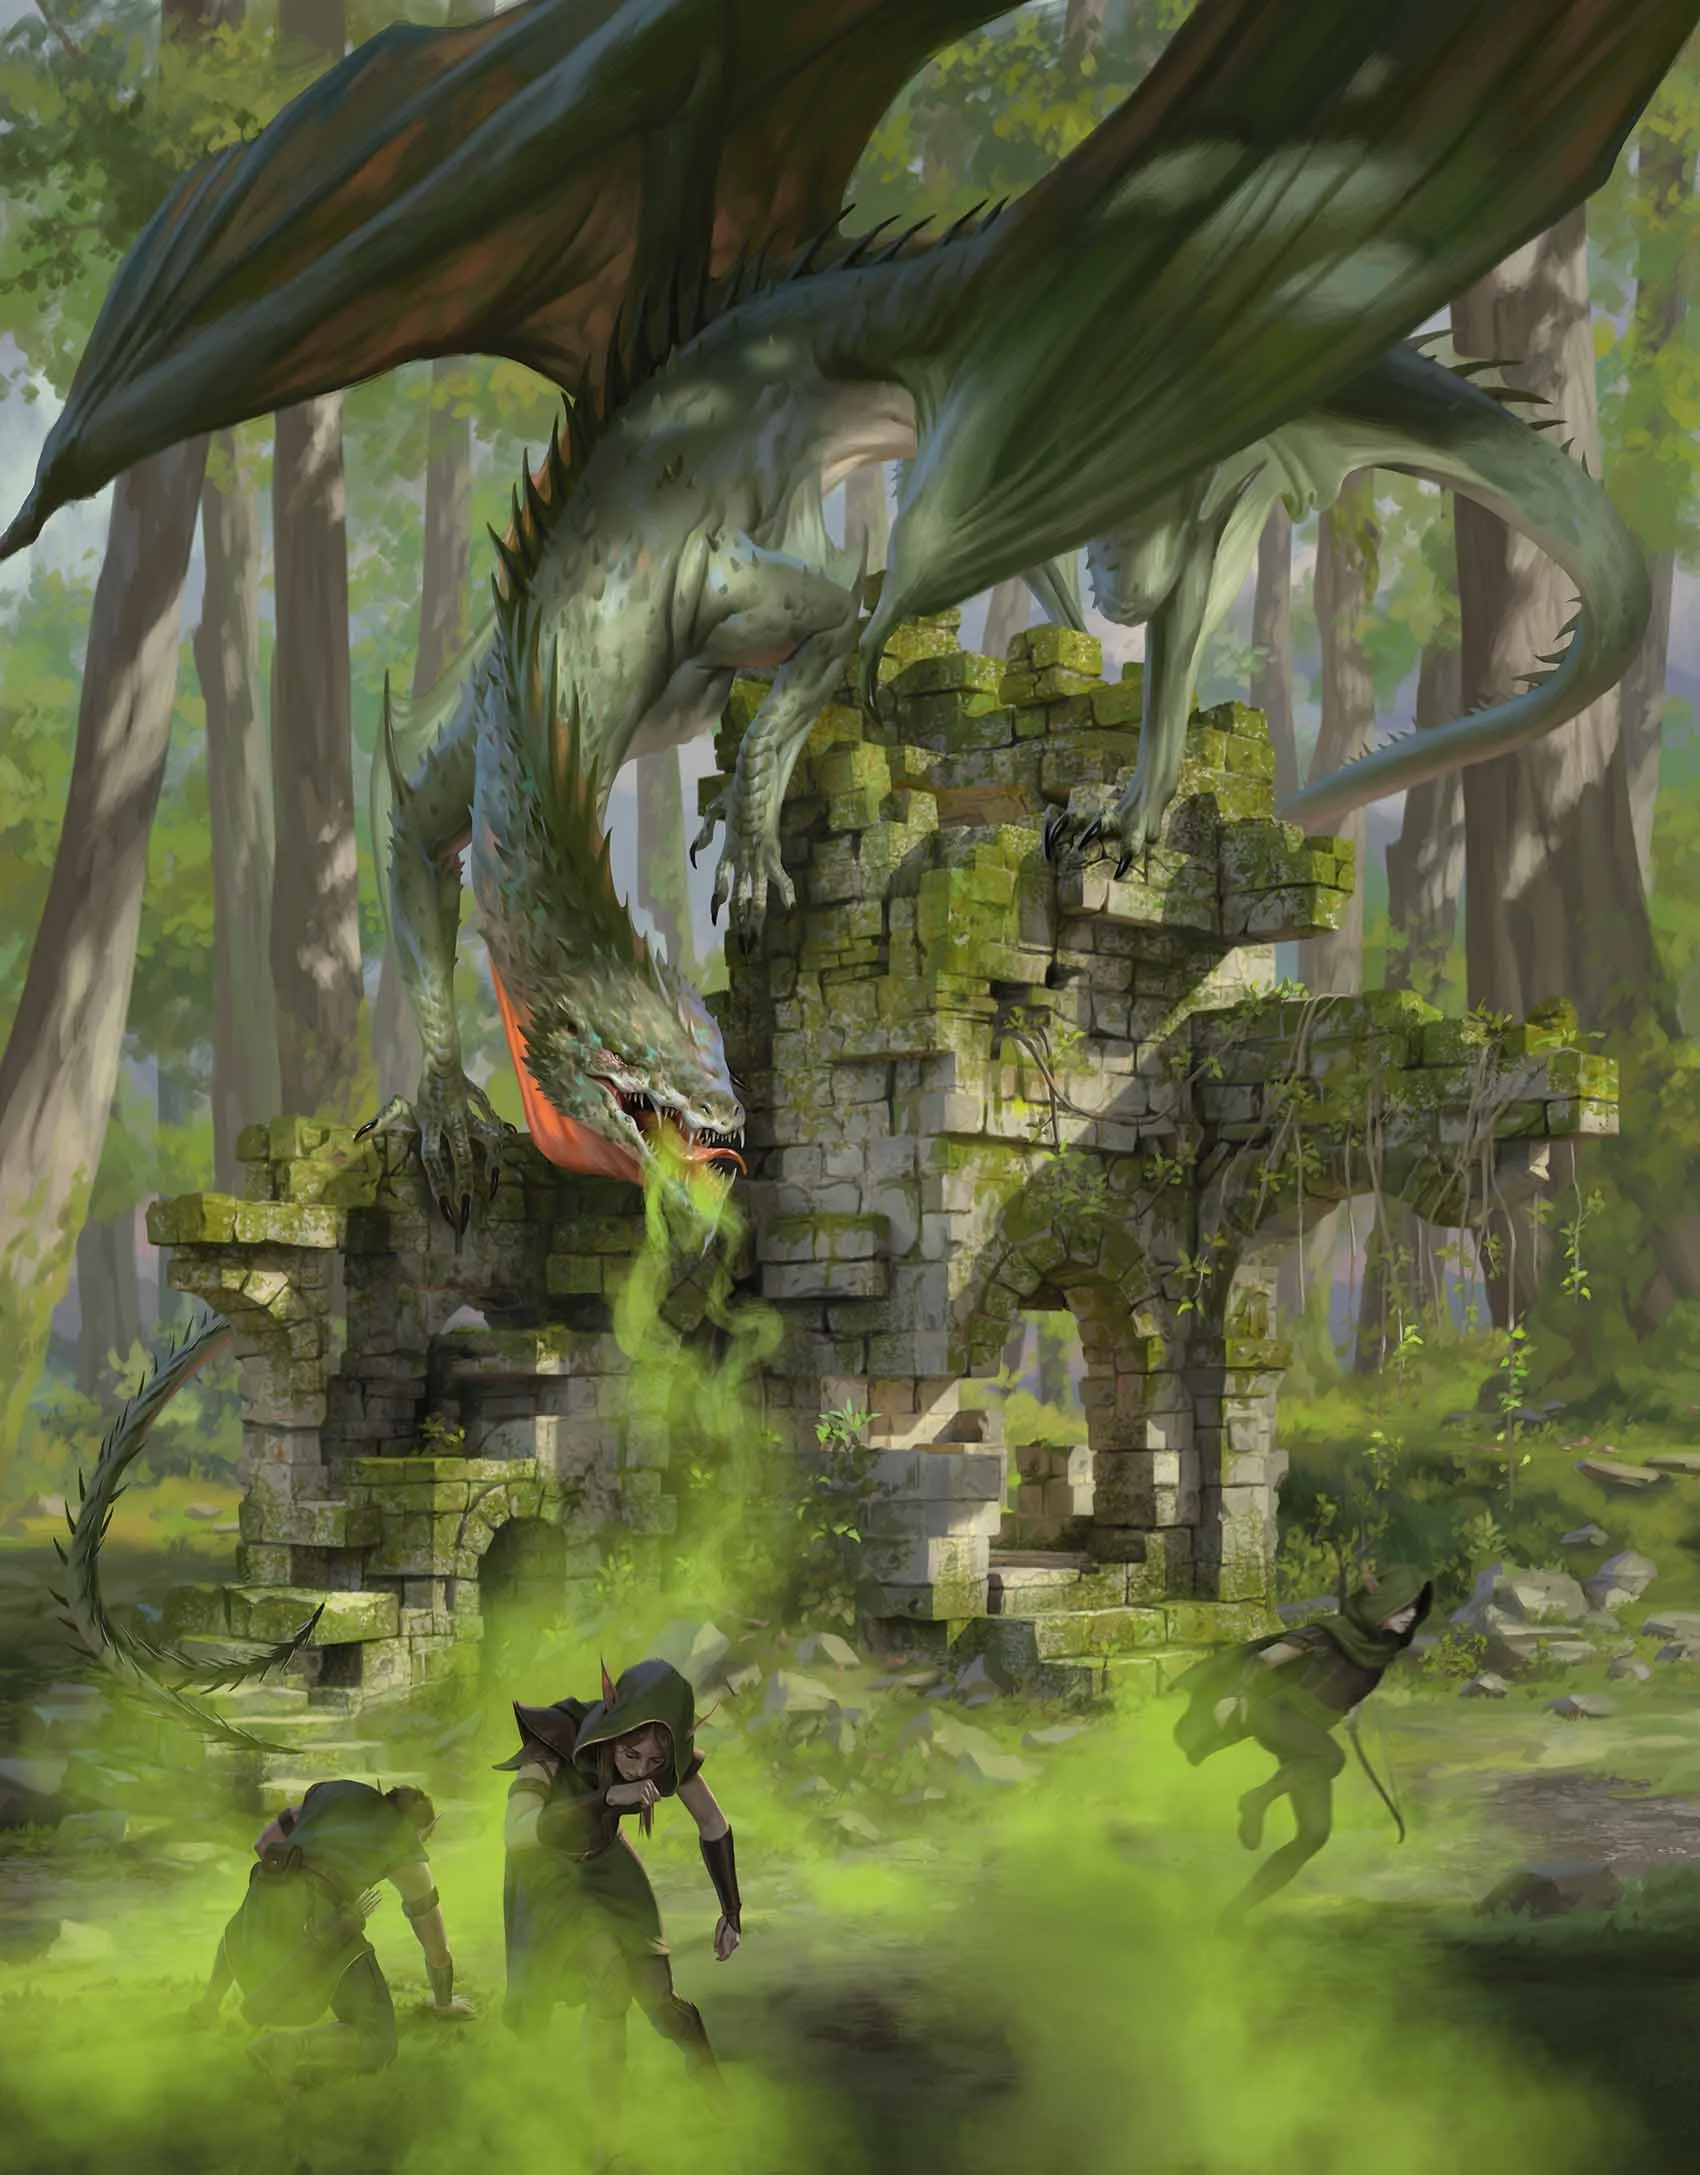 Вирмлинг зелёного дракона (Green Dragon Wyrmling)